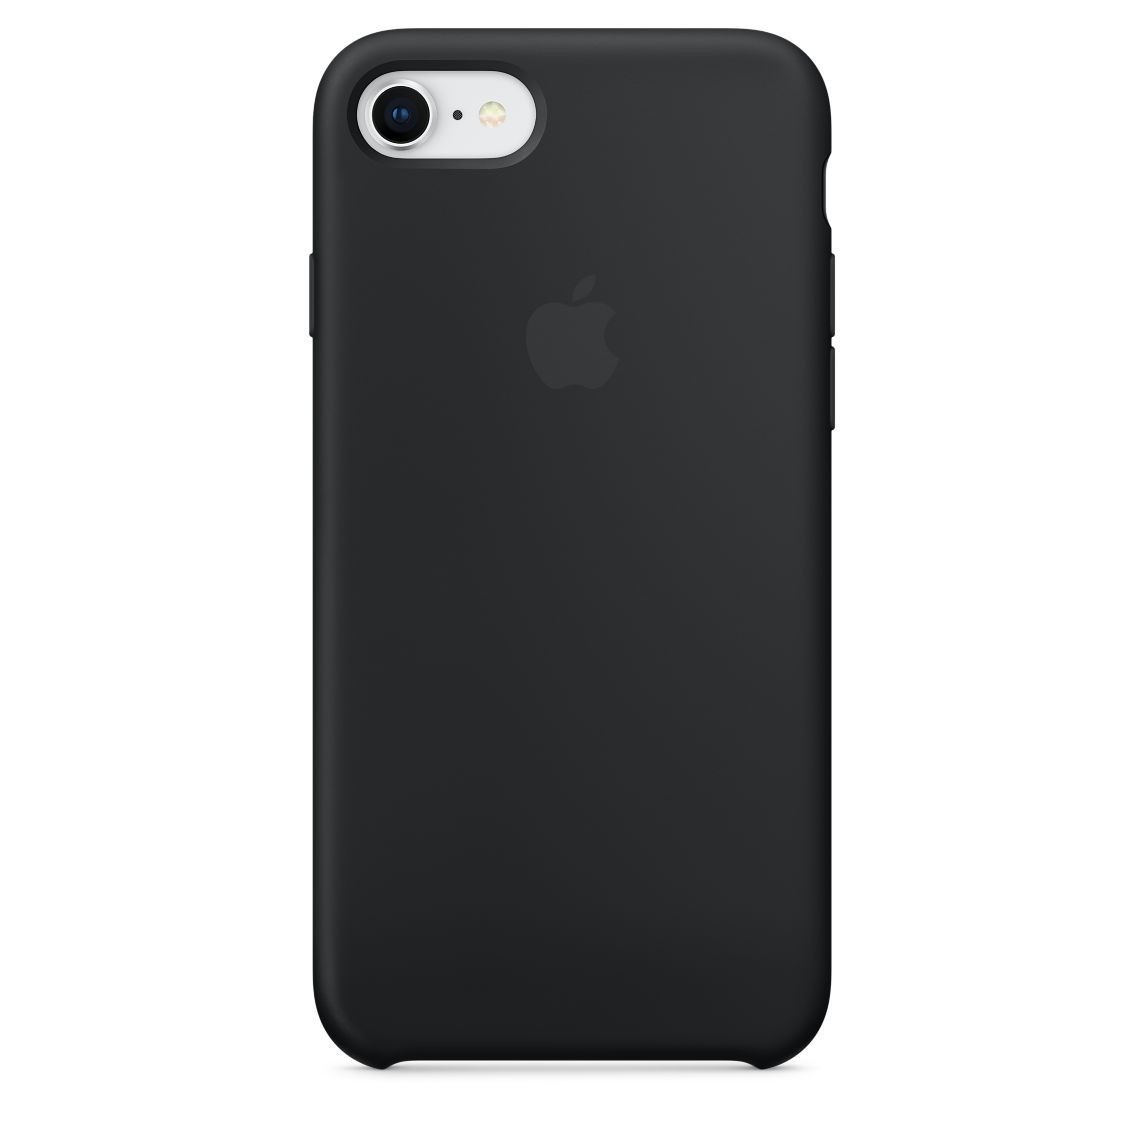 Apple Silikonhülle iPhone 7 / 8 / SE 2020 schwarz